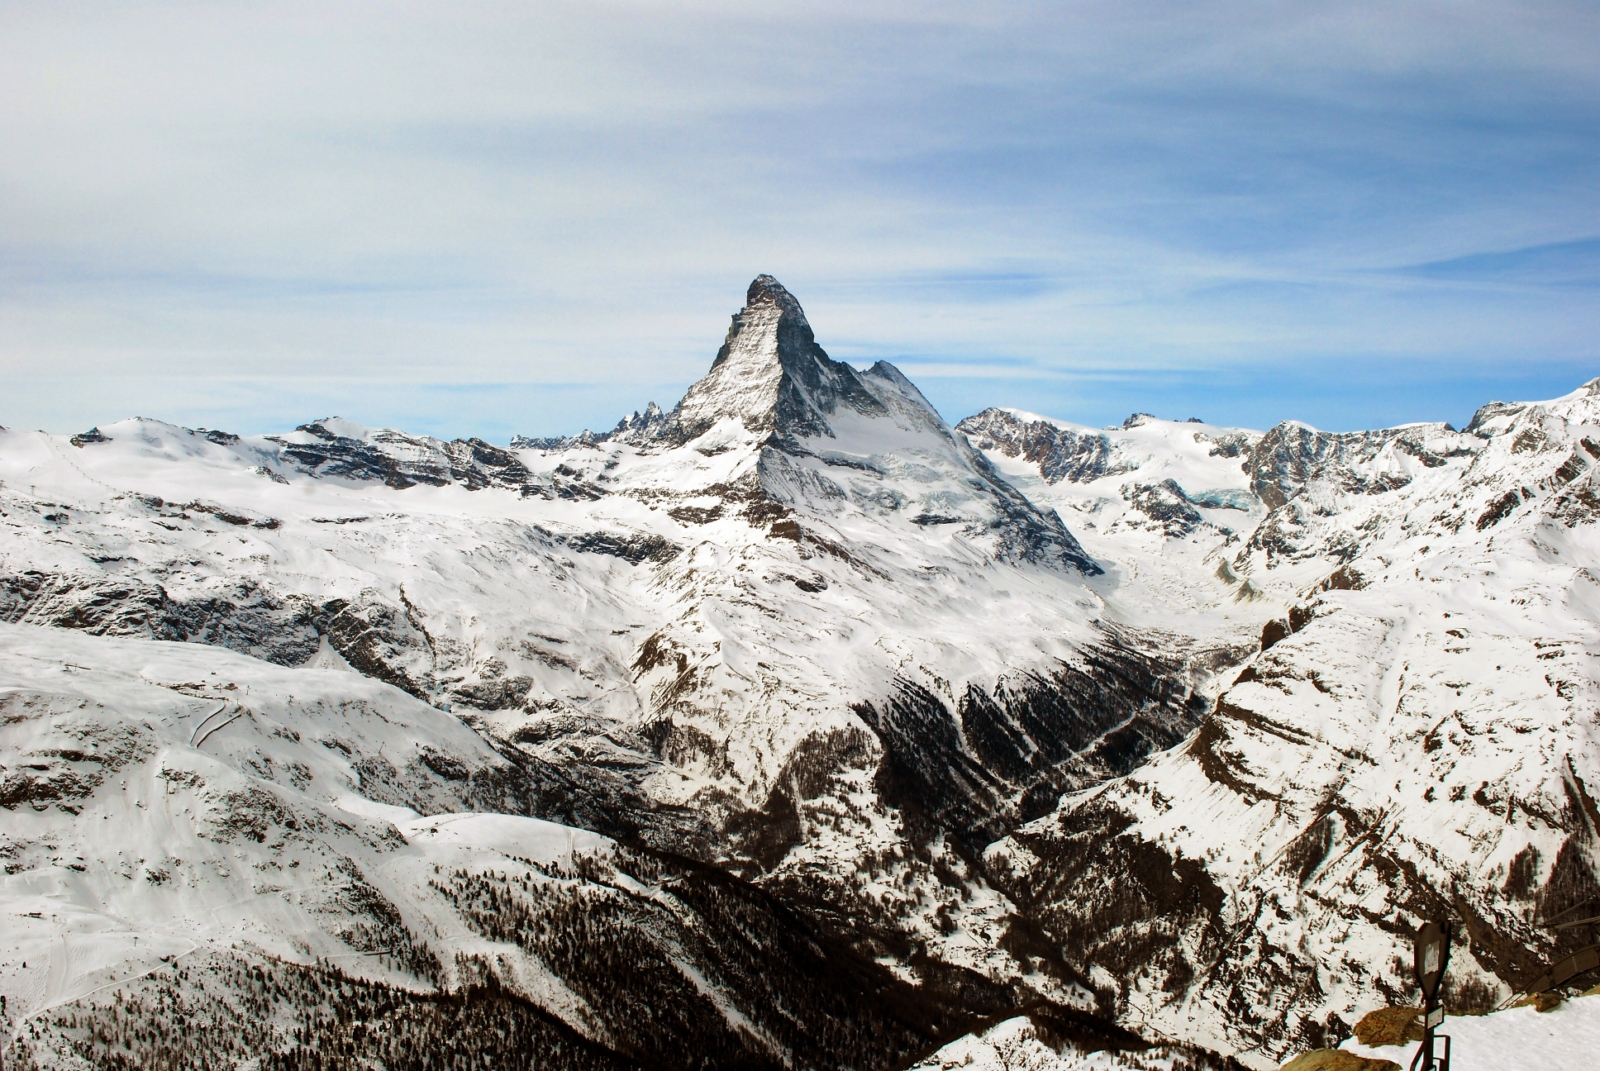 A Matterhorn